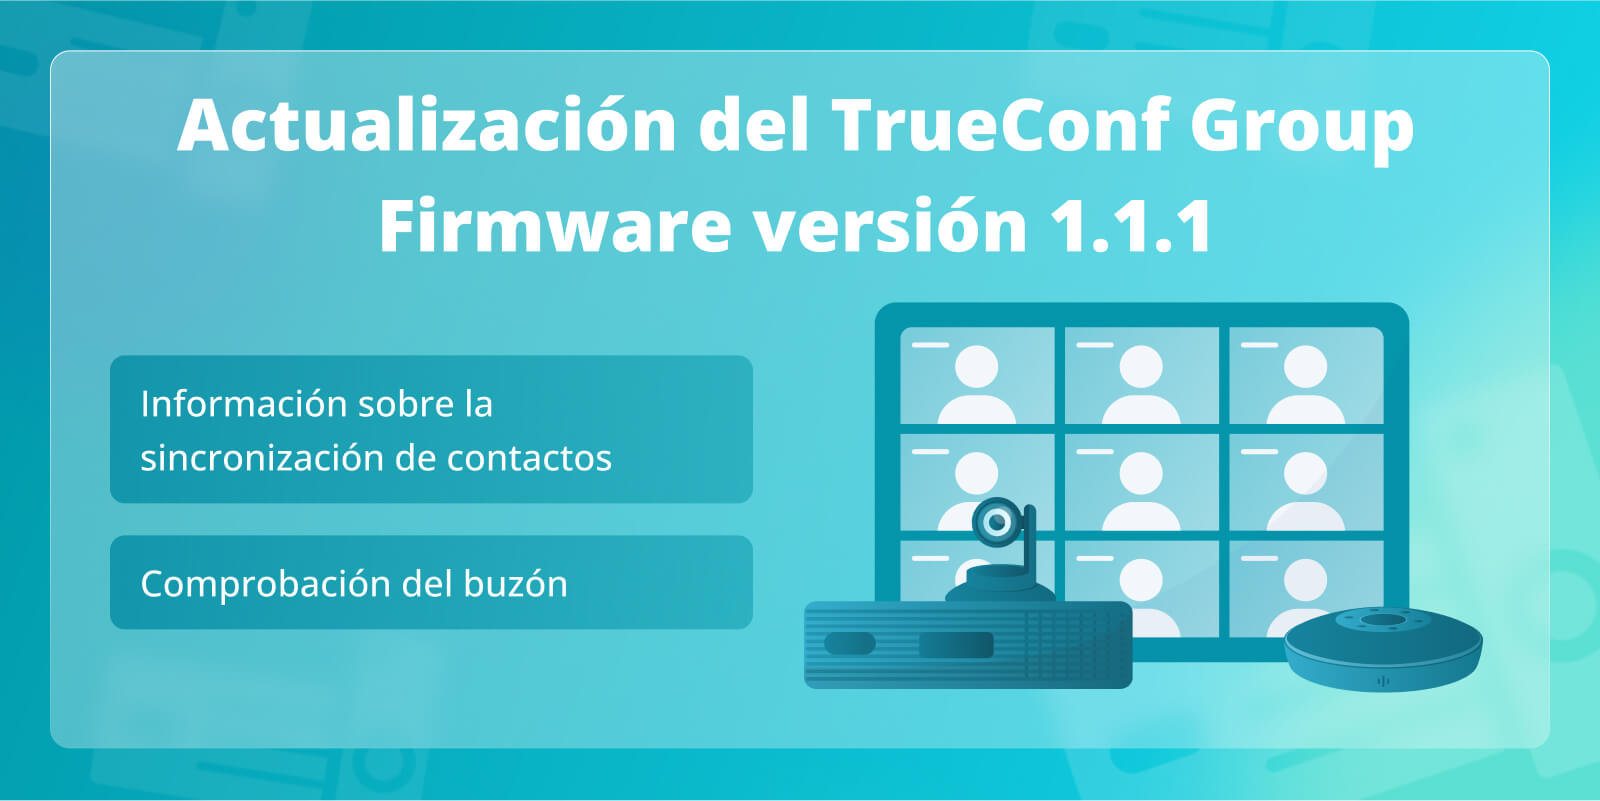 TrueConf Group 1.1.1: Comprobación del buzón e información sobre sincronización de contactos con el TrueConf Server y el TrueConf MCU 4